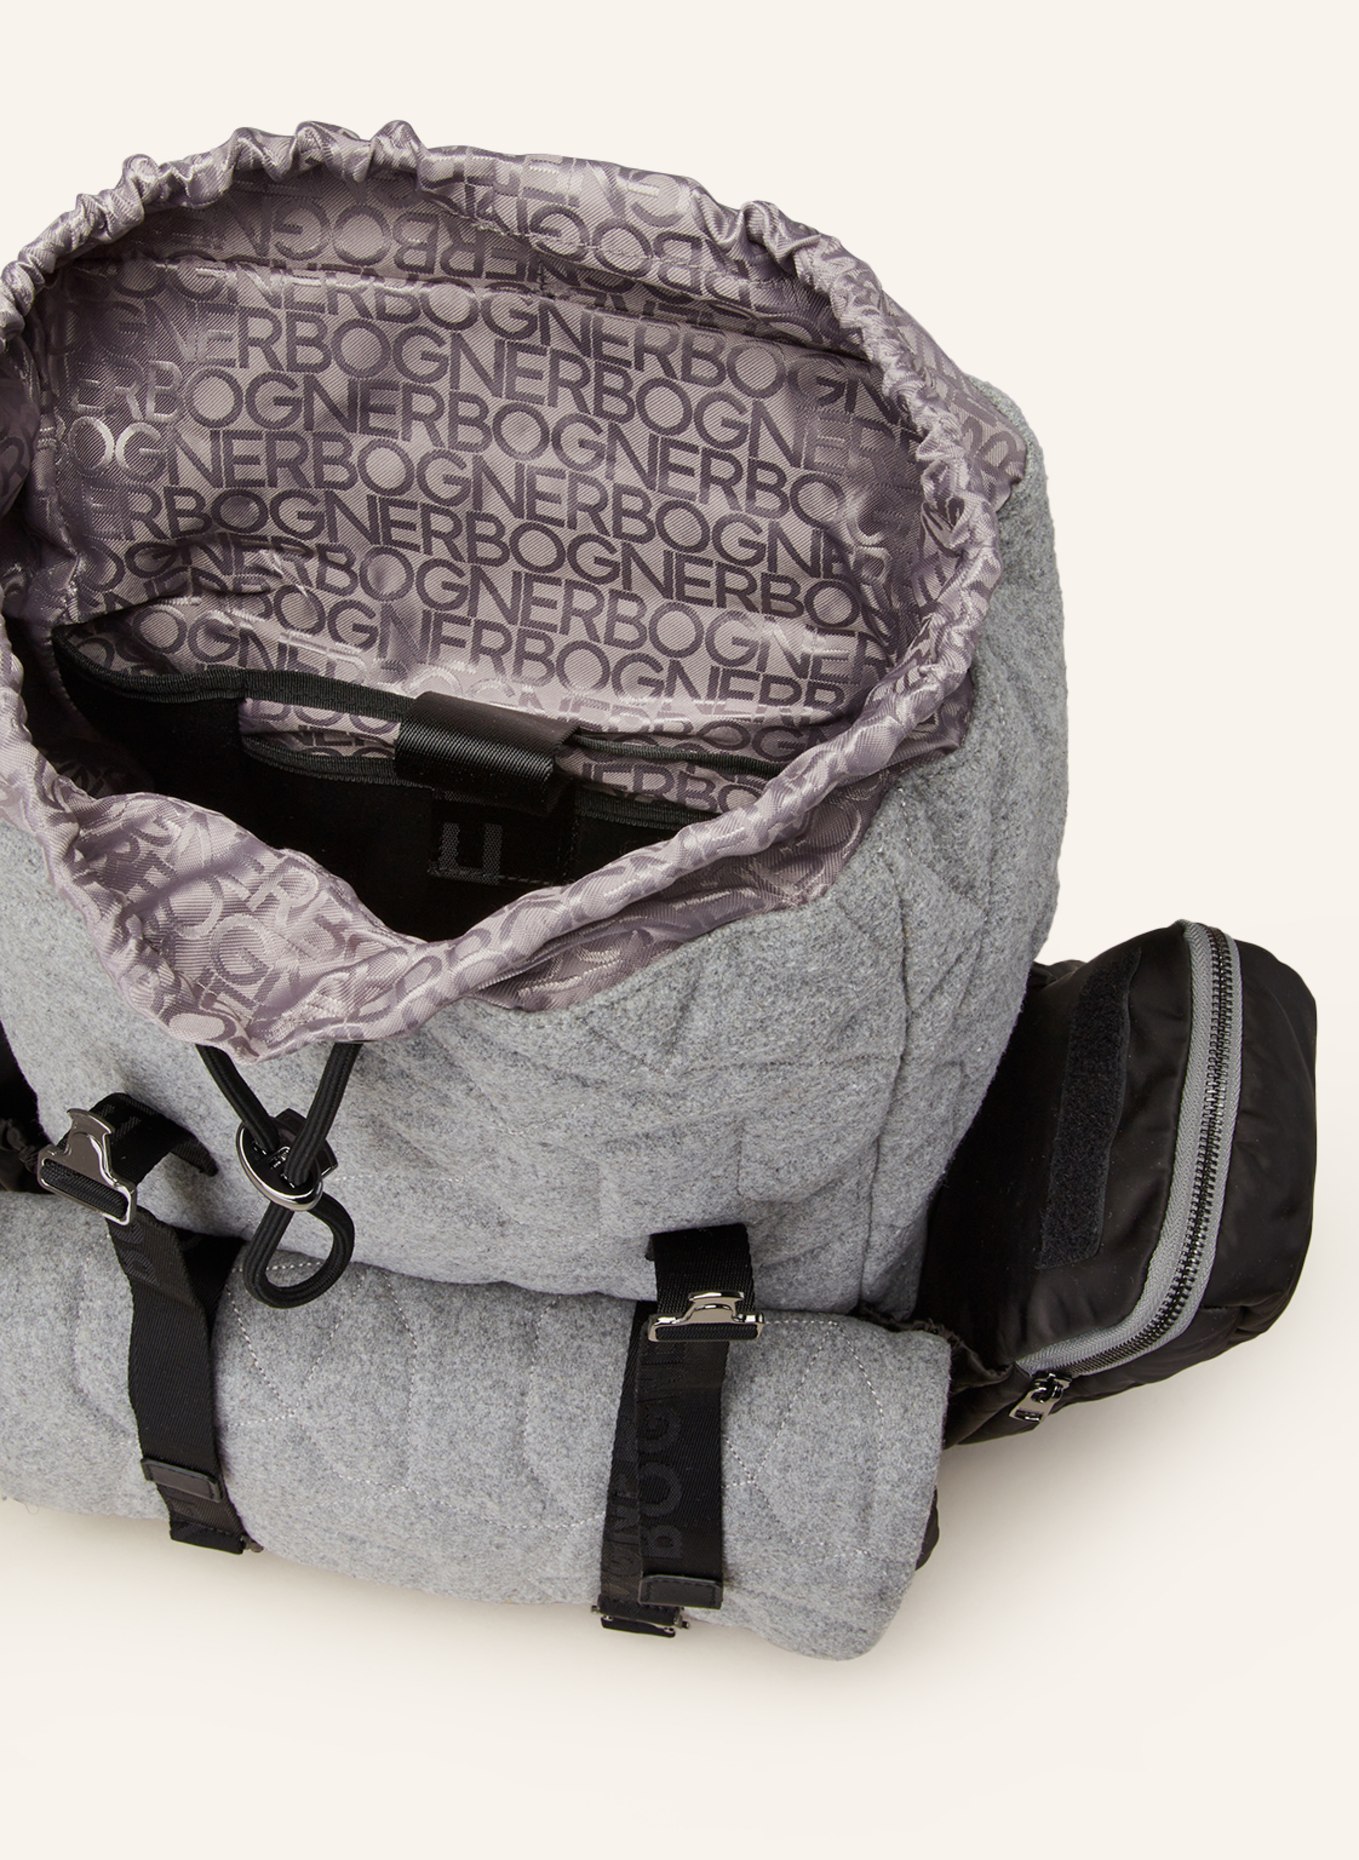 BOGNER Backpack MONTE VOGGO ASH, Color: GRAY/ BLACK (Image 3)